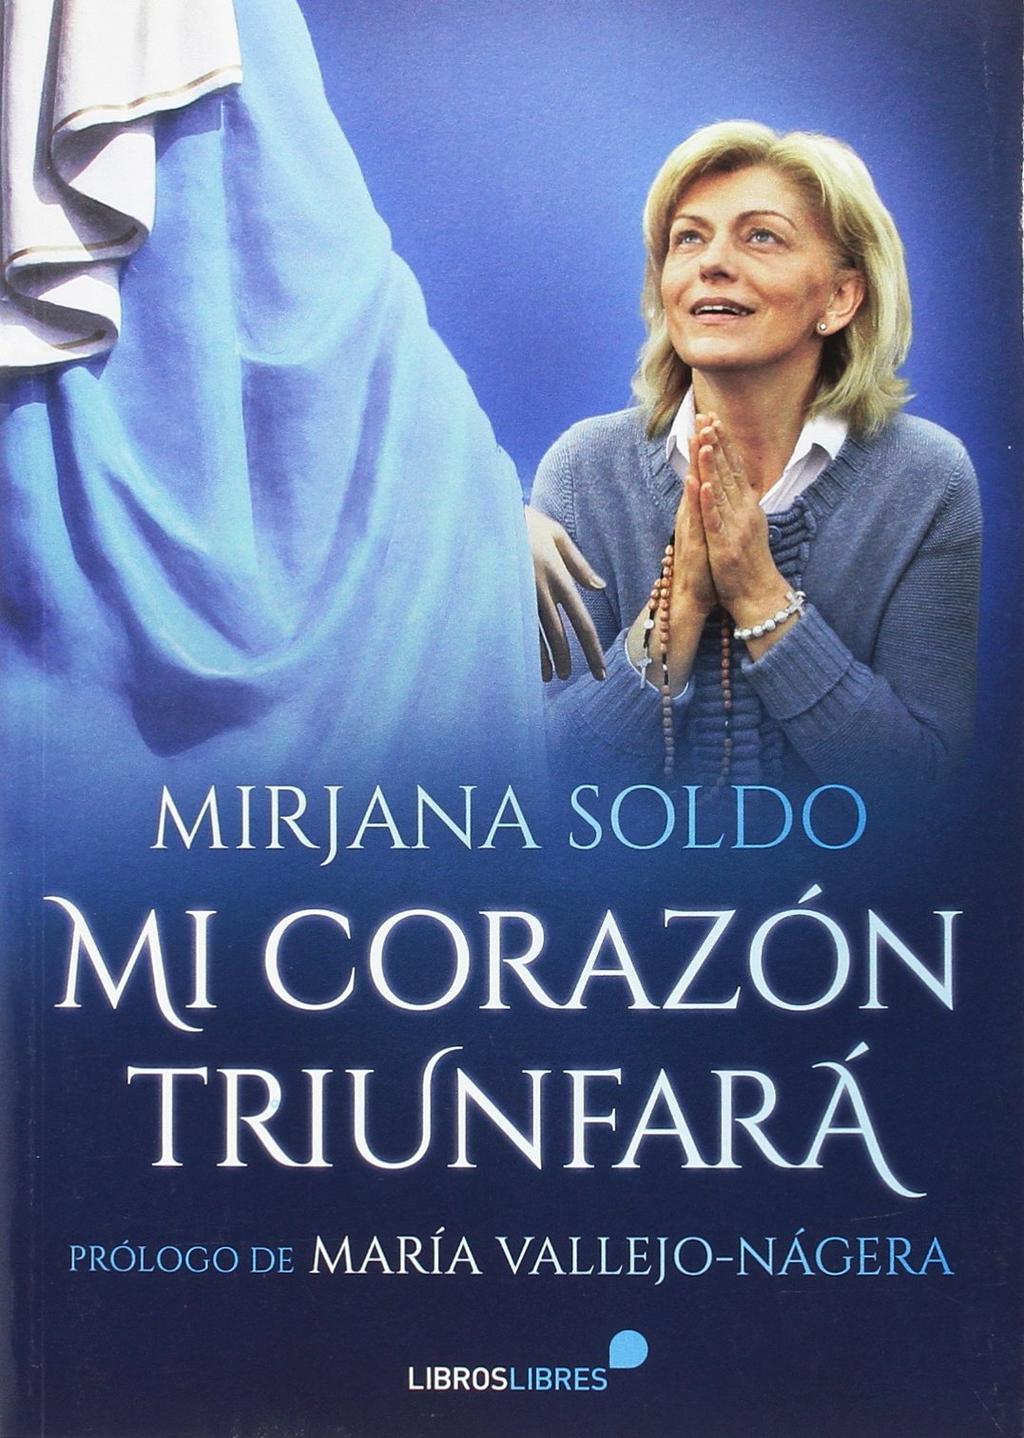 MI CORAZÓN TRIUNFARÁ de Mirjana Soldo (una de las seis videntes de Medjugorje).